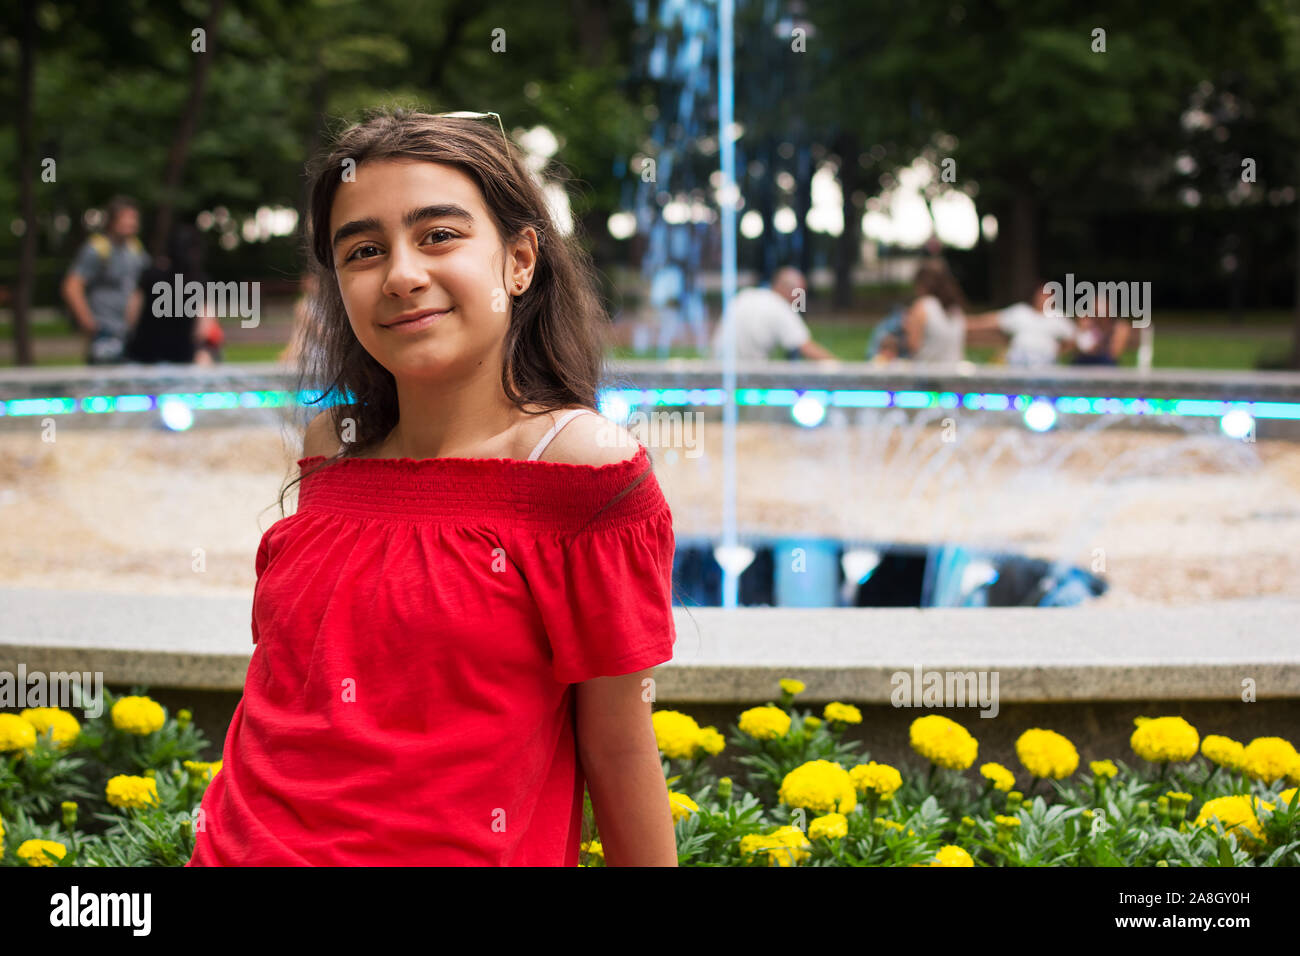 Petite fille prend une photo souvenir devant la fontaine de Burgas, Bulgarie Banque D'Images